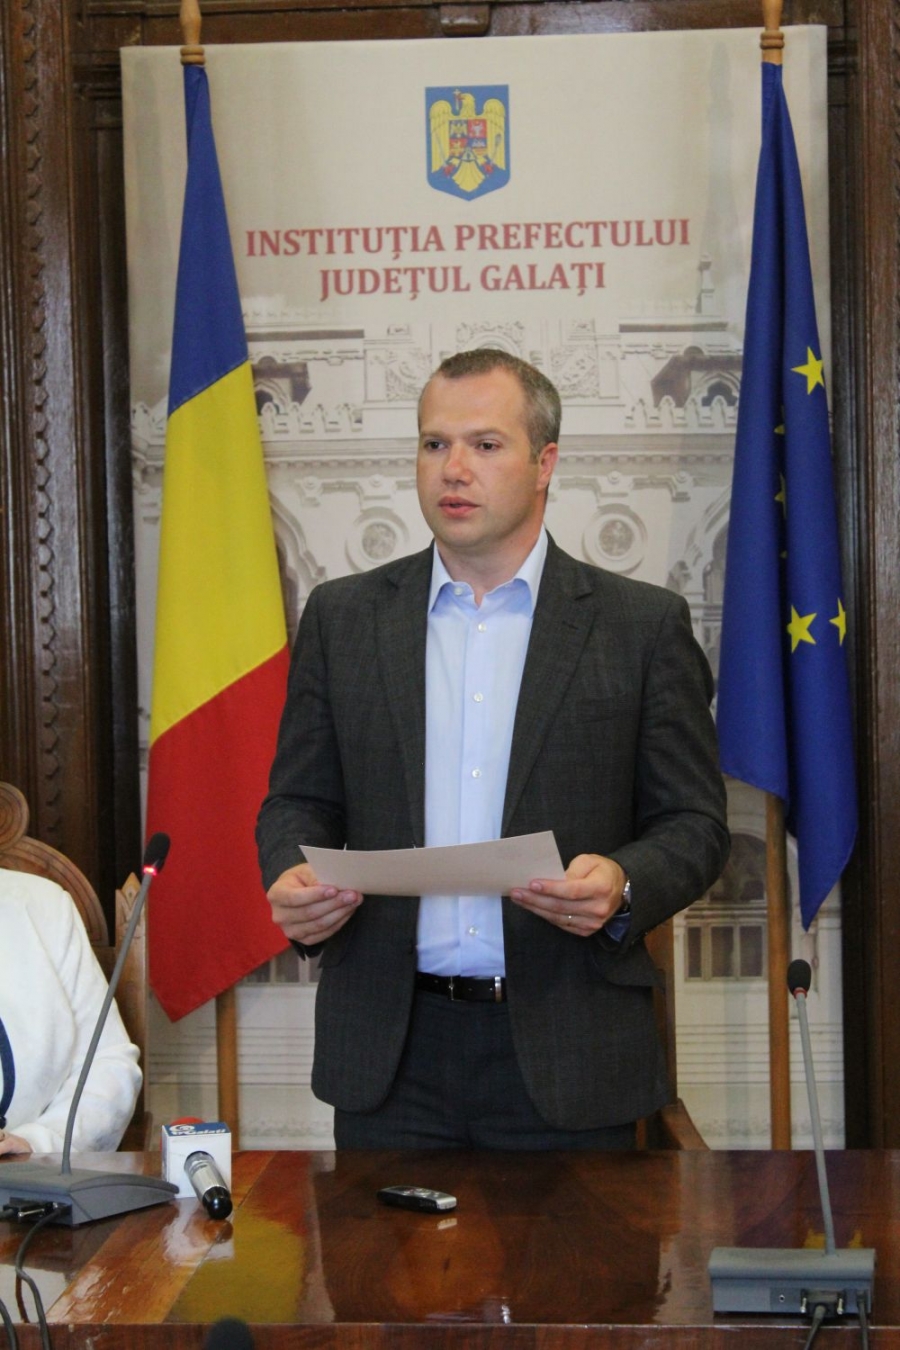 Şedinţa de constituire a Consiliului Local Galaţi. IONUȚ PUCHEANU depune jurământul de primar